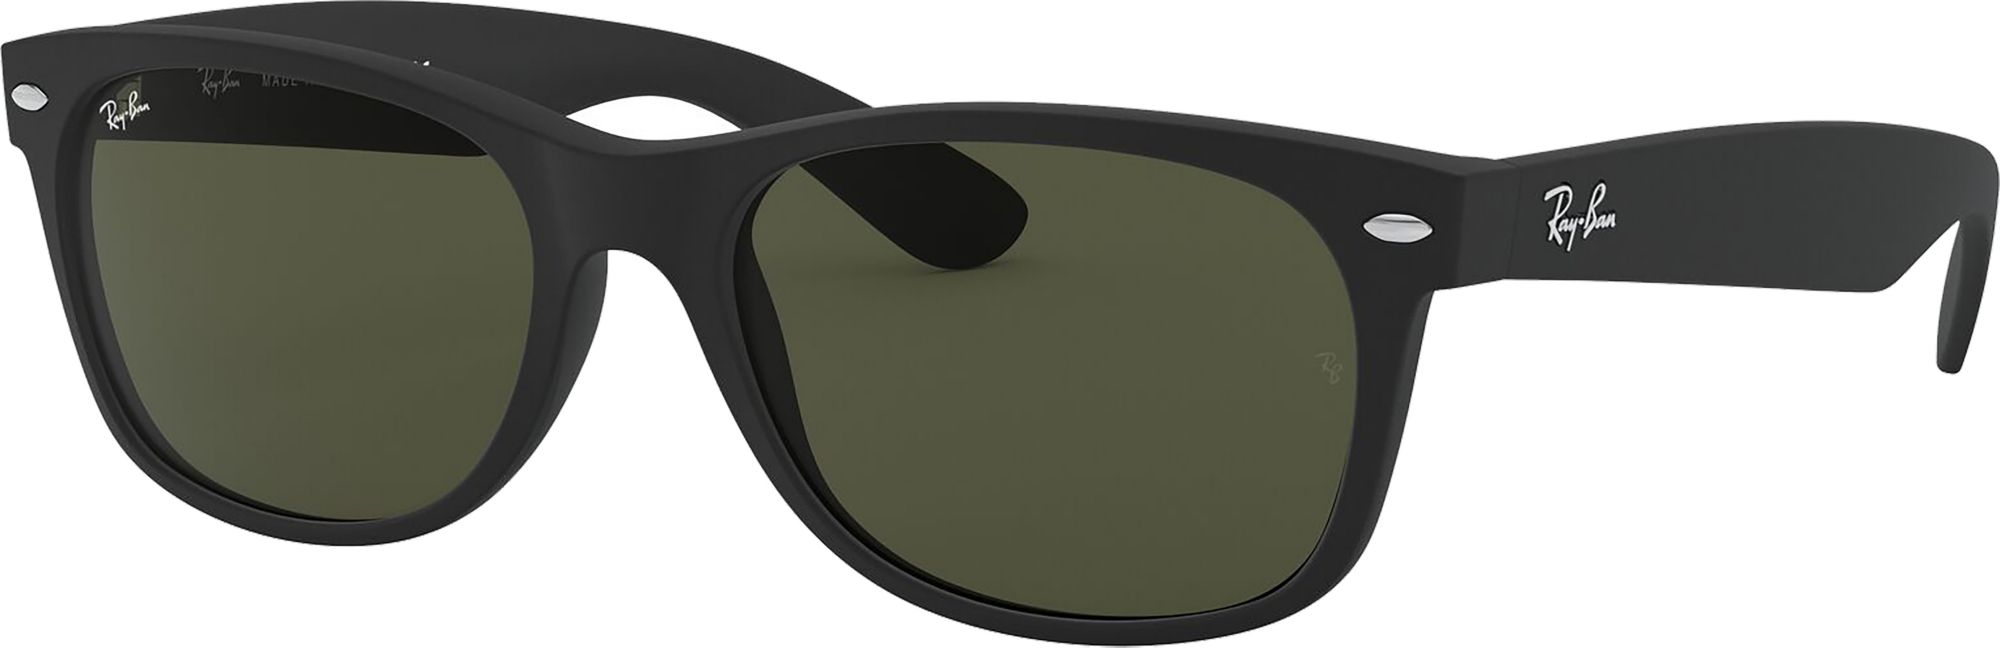 Photos - Sunglasses Ray-Ban New Wayfarer Polarized , Men's, Tortoise/Green 16RYBUNWW 